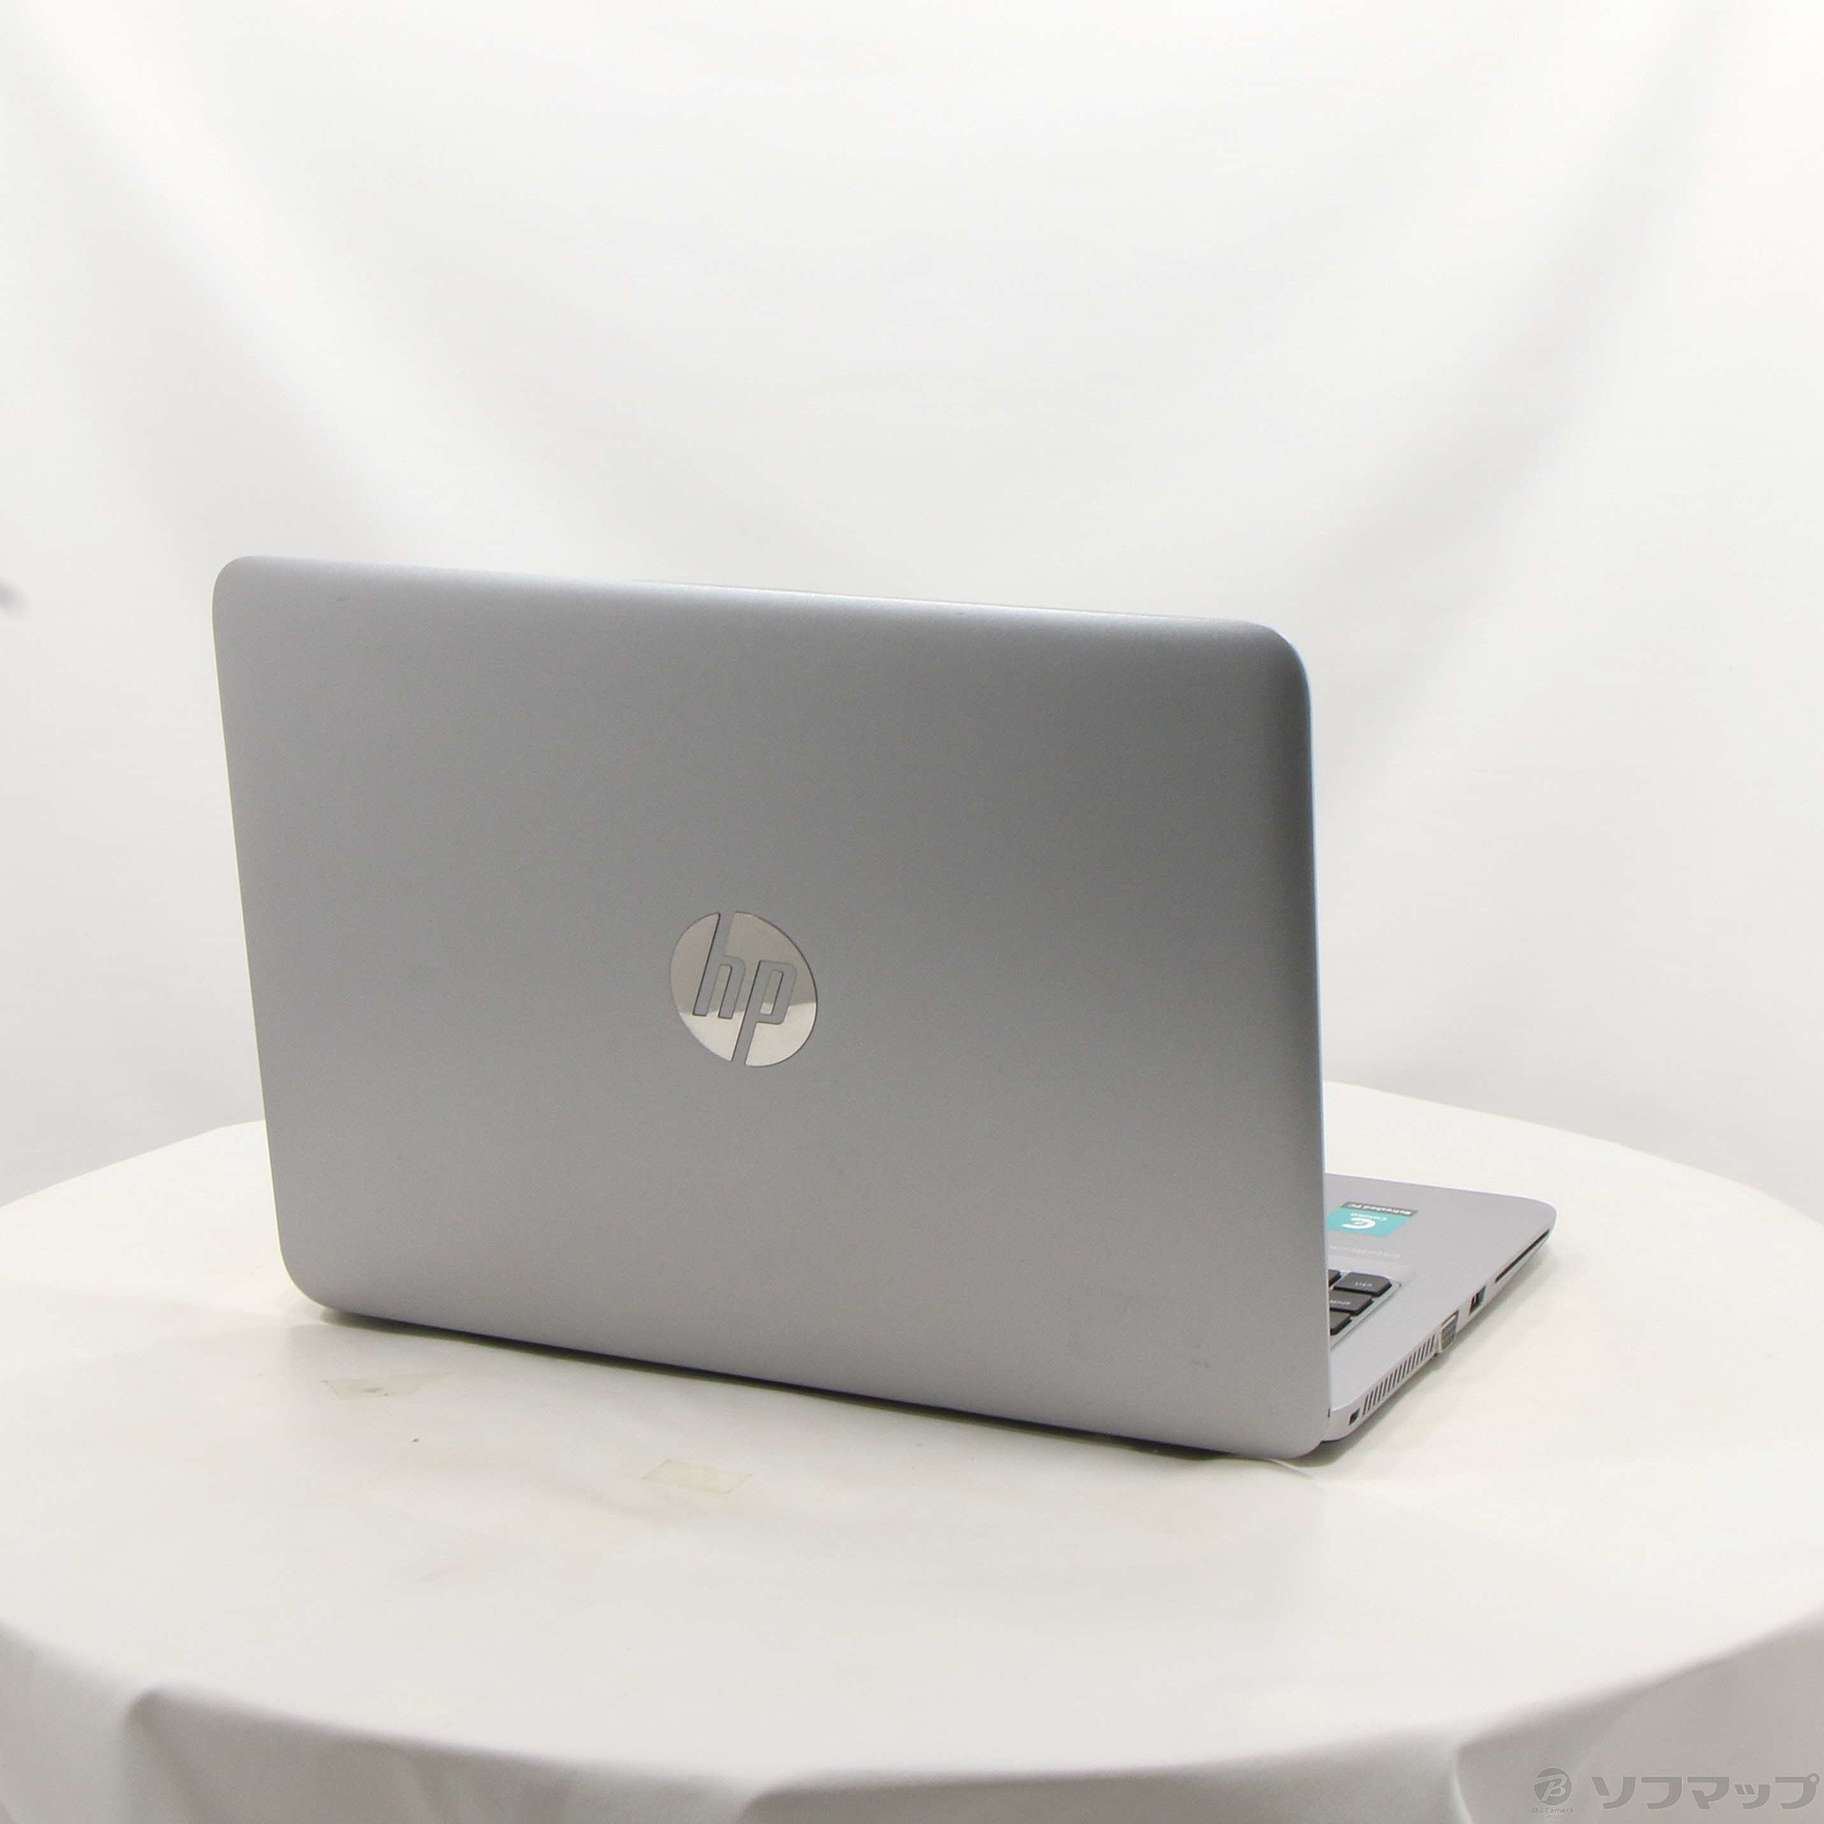 中古】格安安心パソコン HP EliteBook 820 G3 L4Q21AV 〔Windows 10